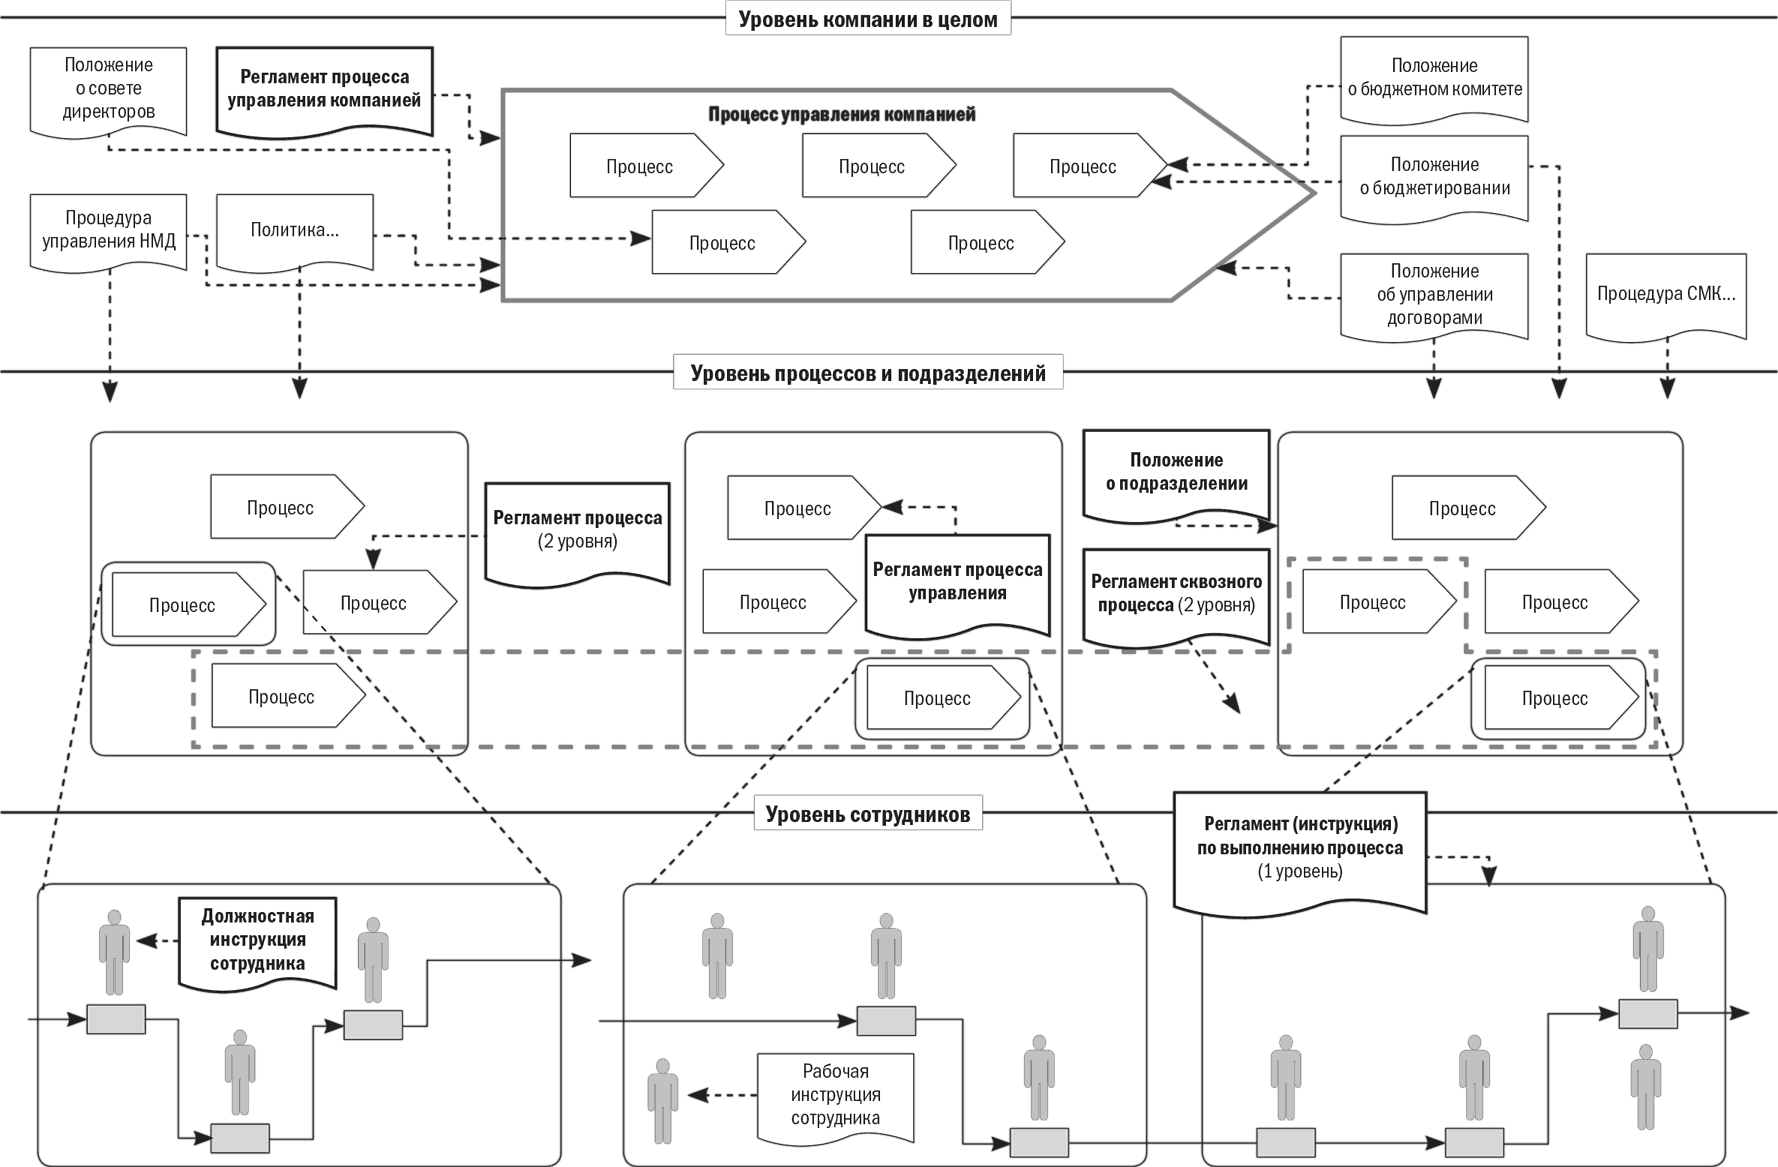 Бизнес карта организации. Карта процессов производственного предприятия пример. Карта бизнес процессов предприятия. Карта бизнес процессов компании пример. Бизнес-процессы компании первого уровня.